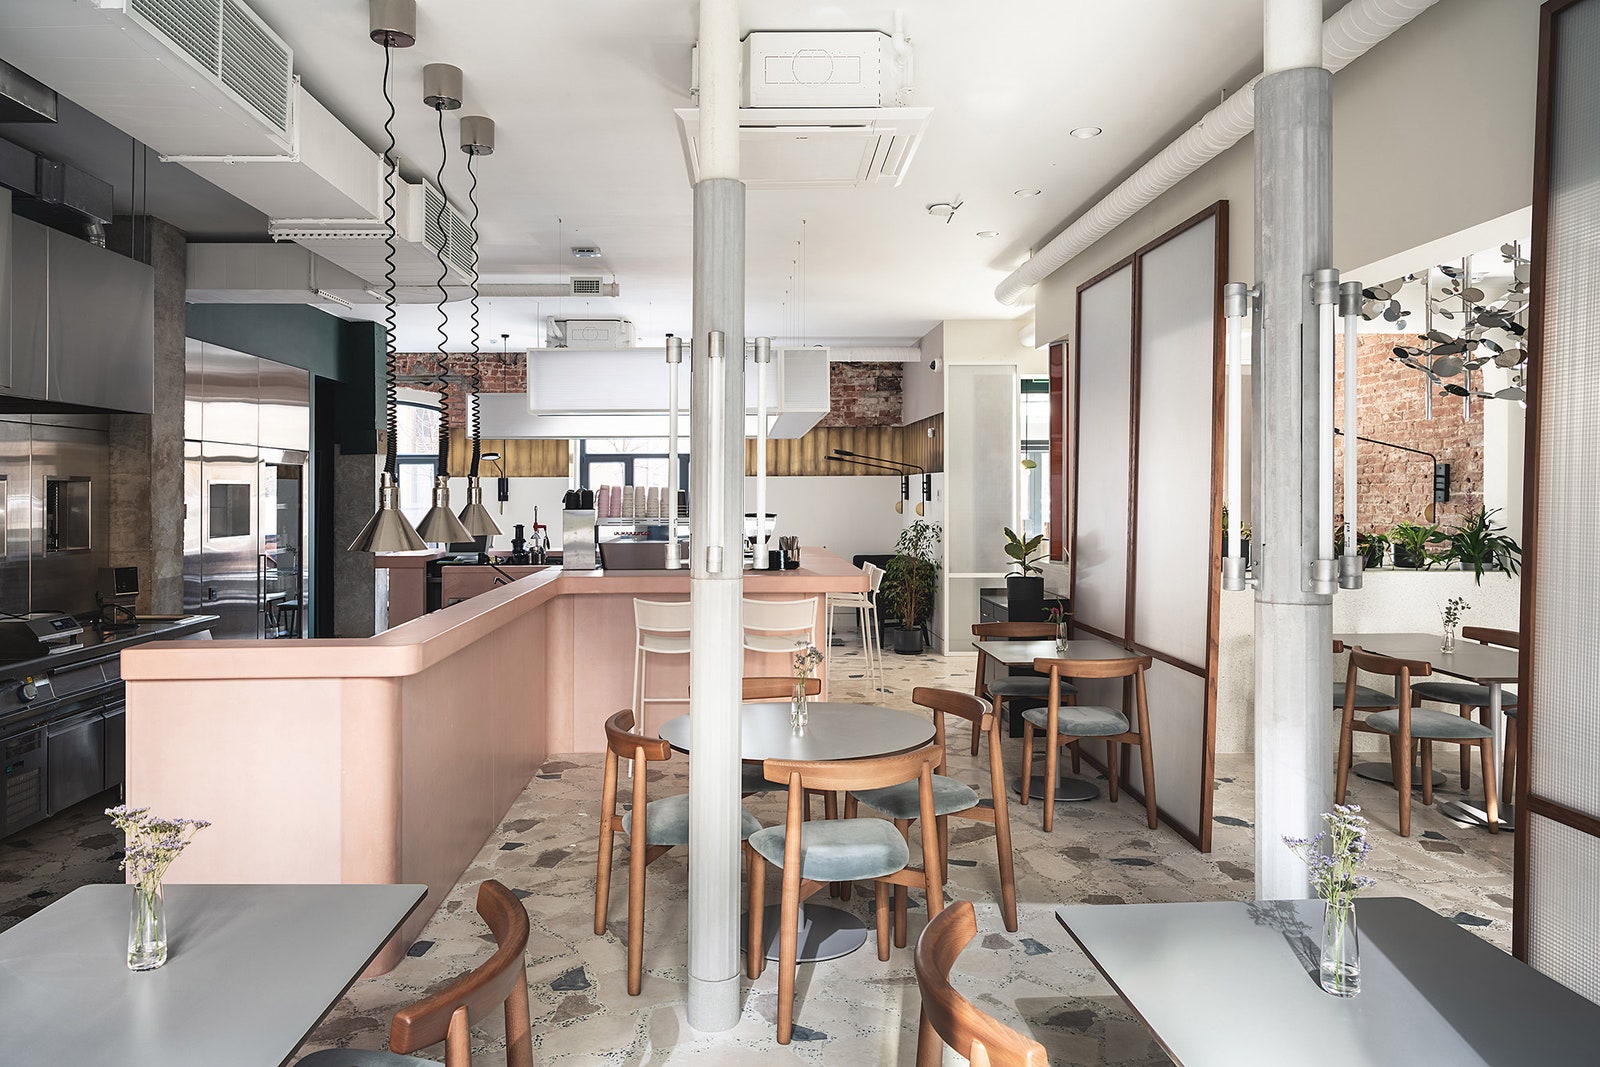 Новый ресторан Sight Coffee  Dine в СанктПетербурге  обзор интерьера фото